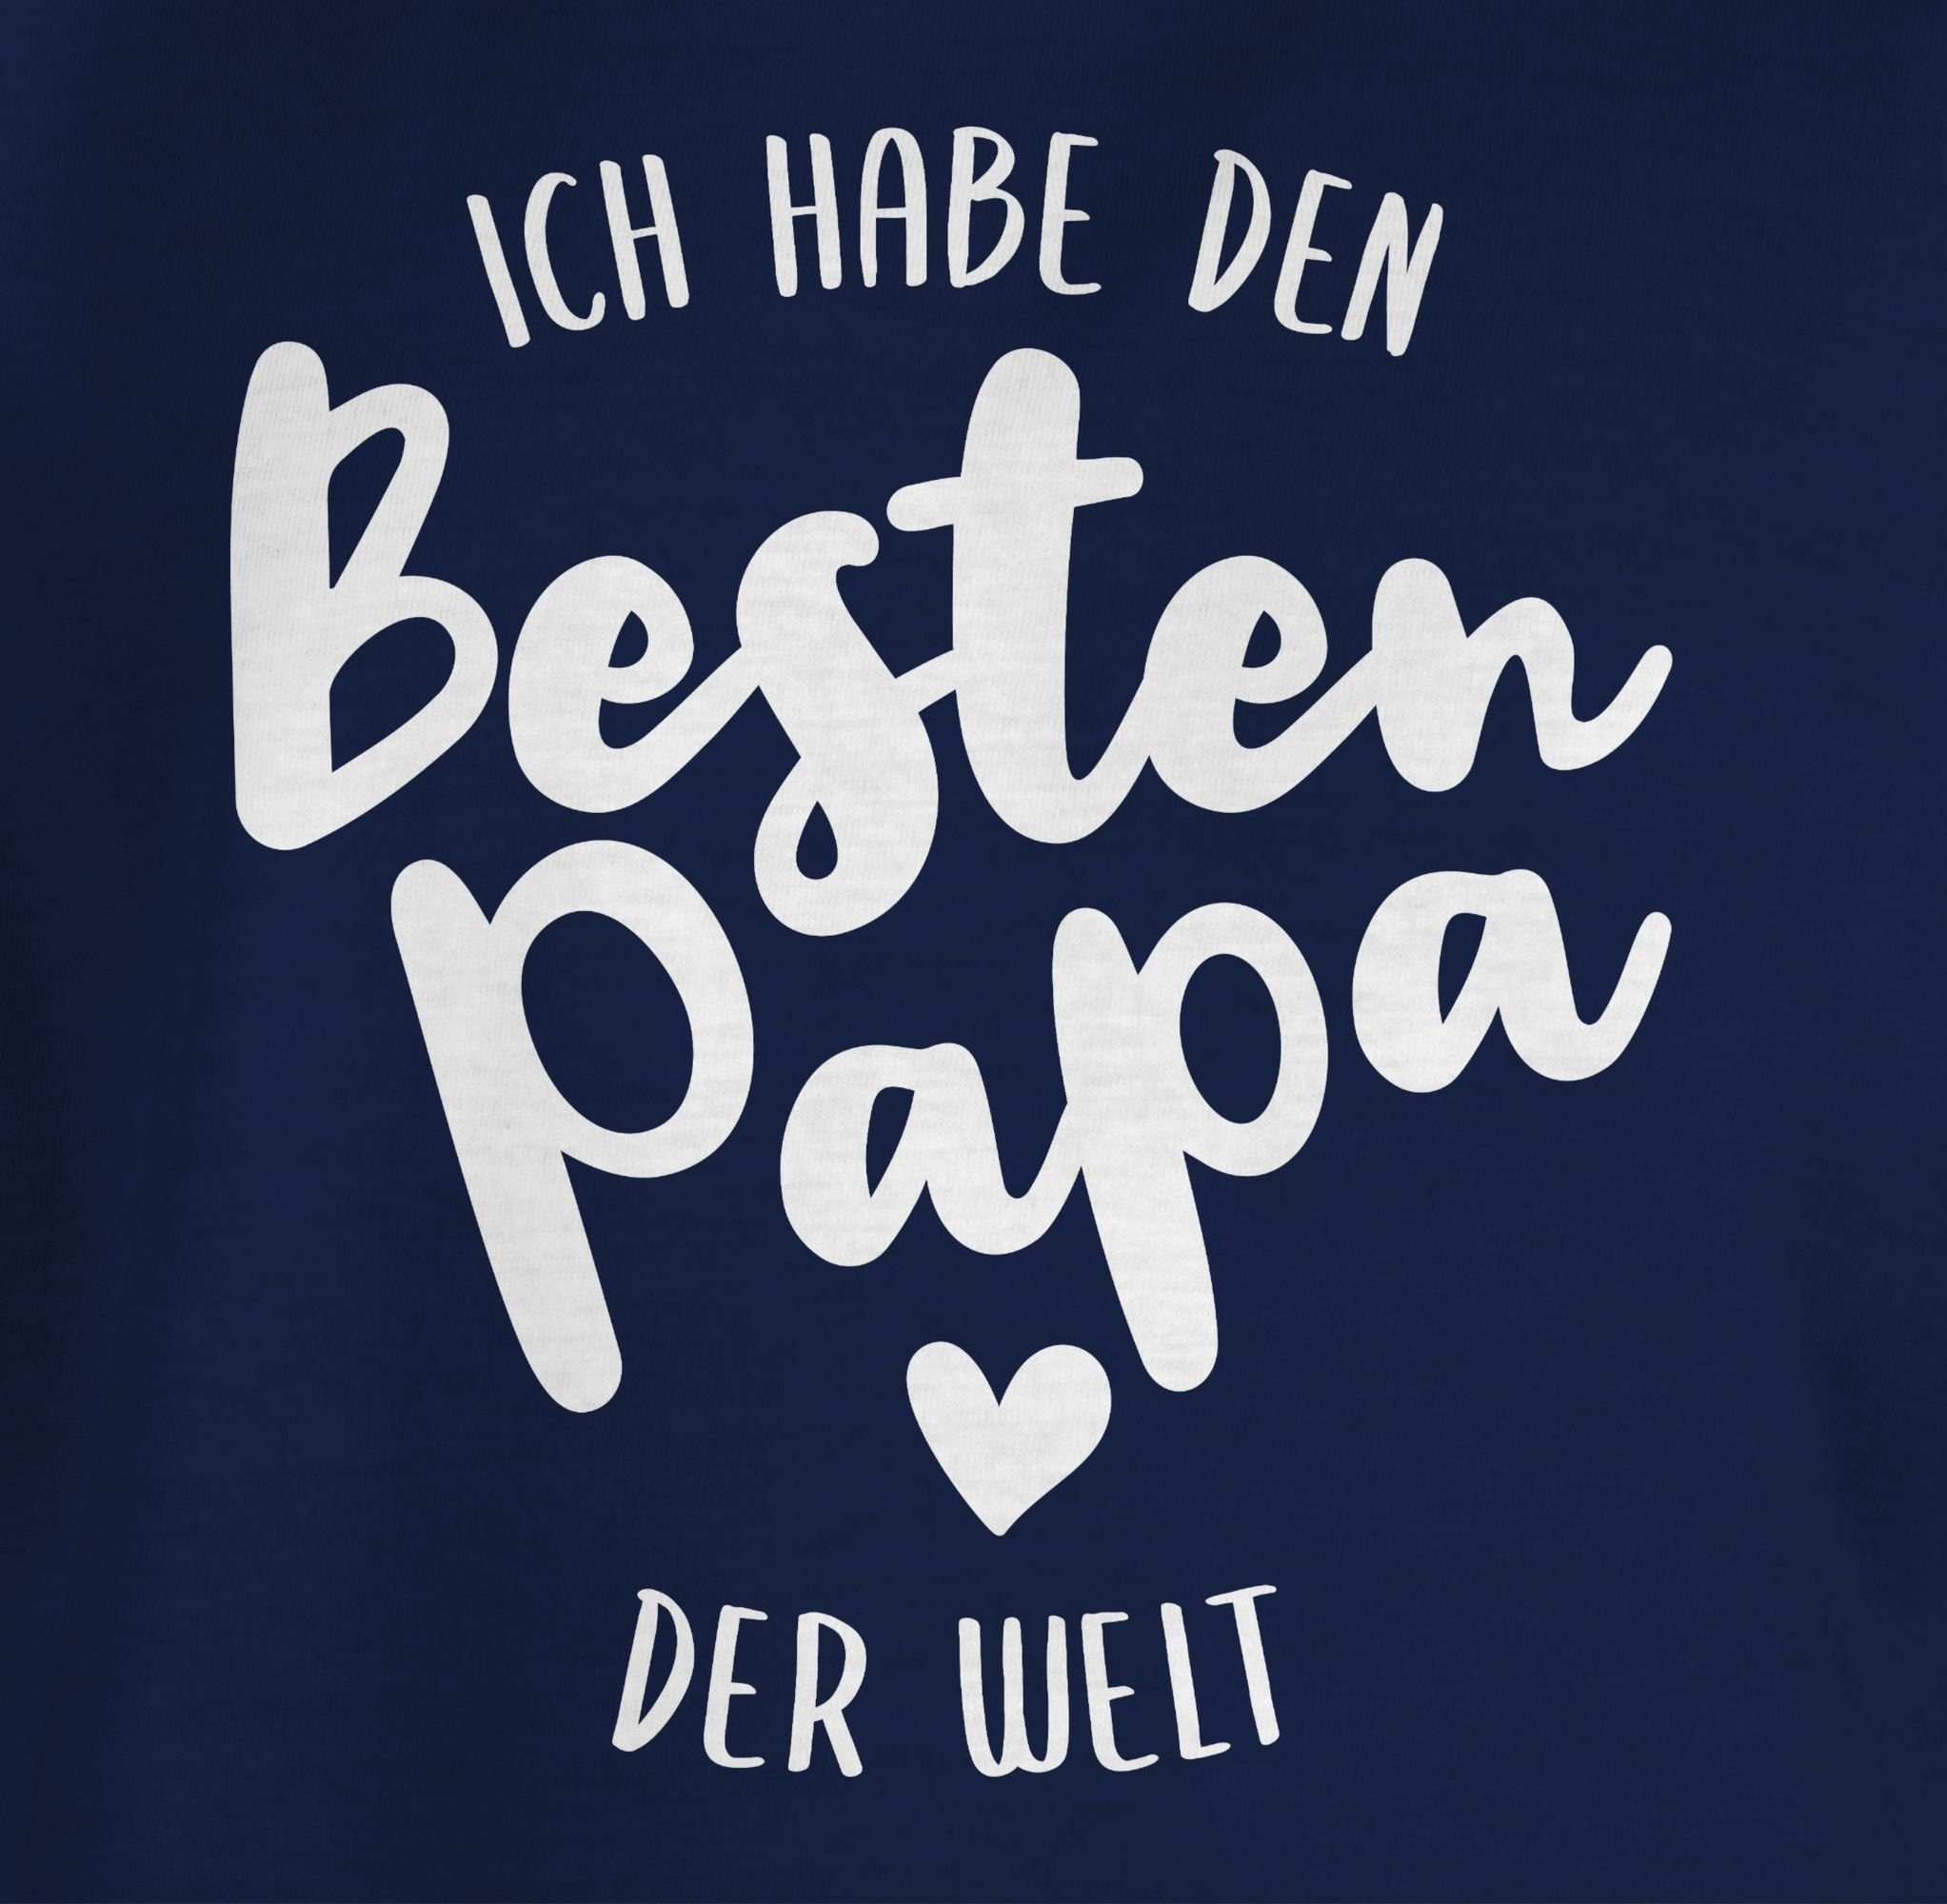 Shirtracer T-Shirt Ich Papa Papa 3 der Geschenk besten Vatertag den habe Dunkelblau Welt für